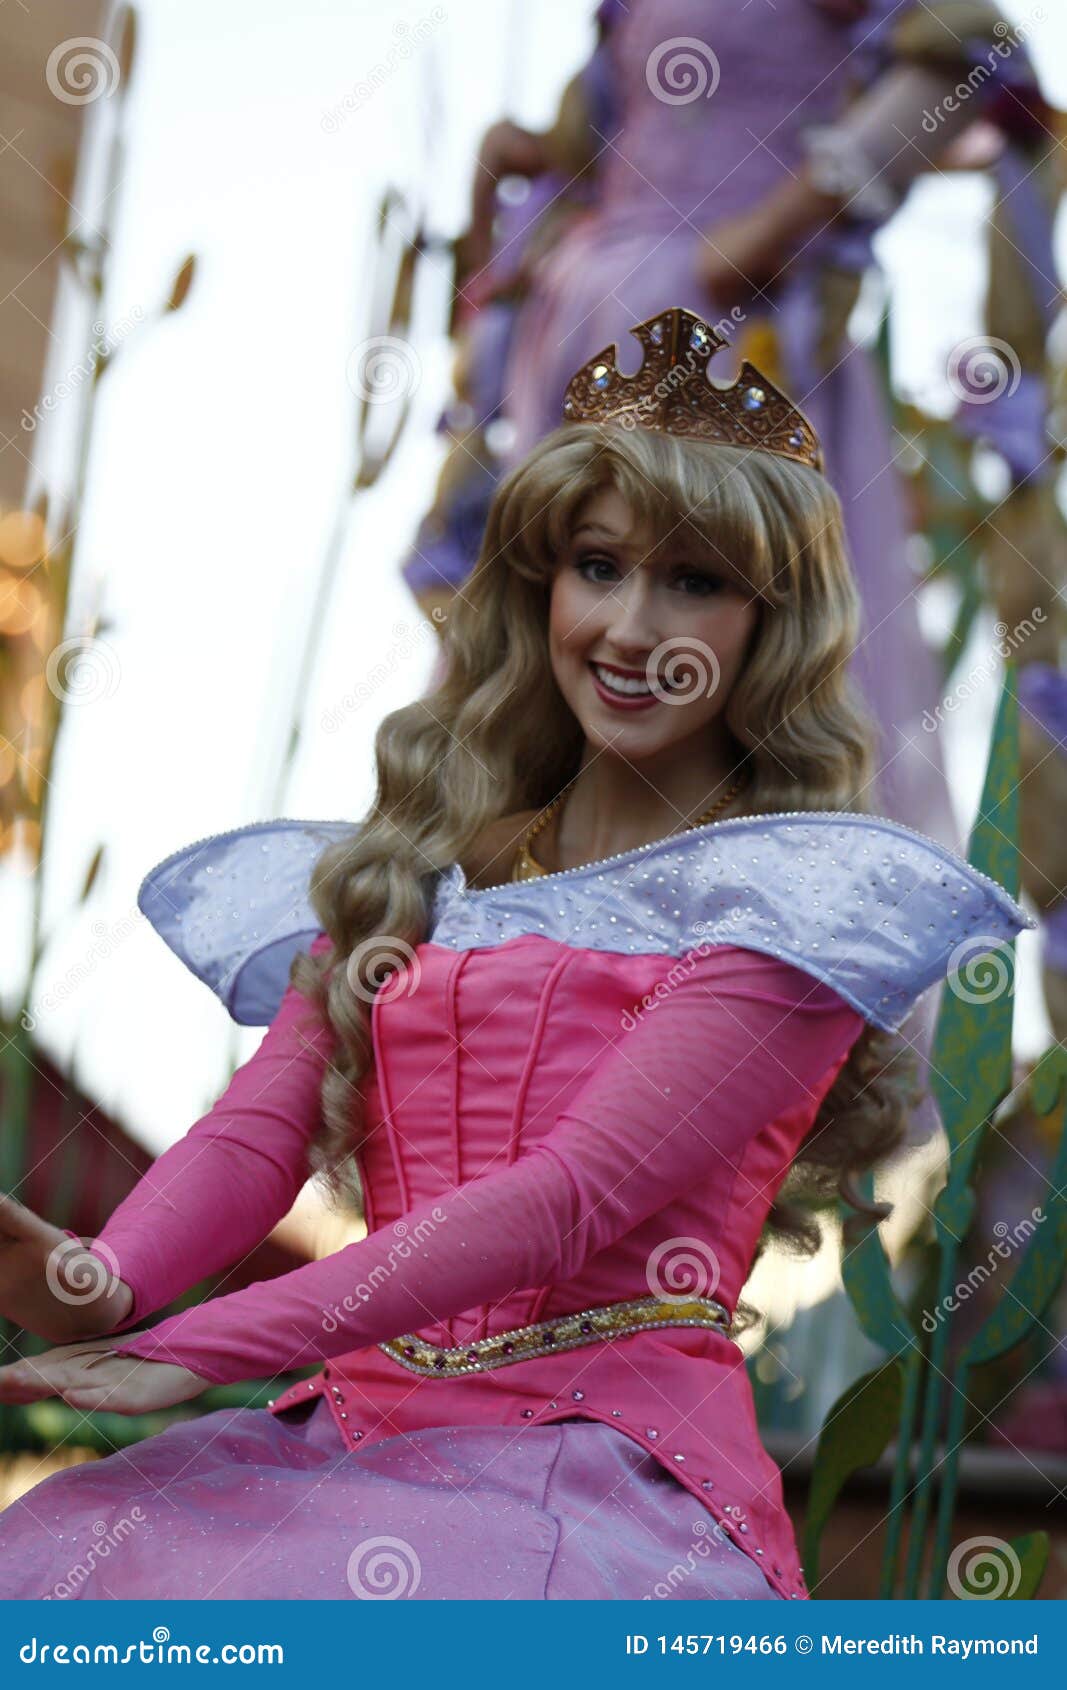 La Bella Durmiente Princesa Aurora Party Girls Costume Dress  Envío gratis